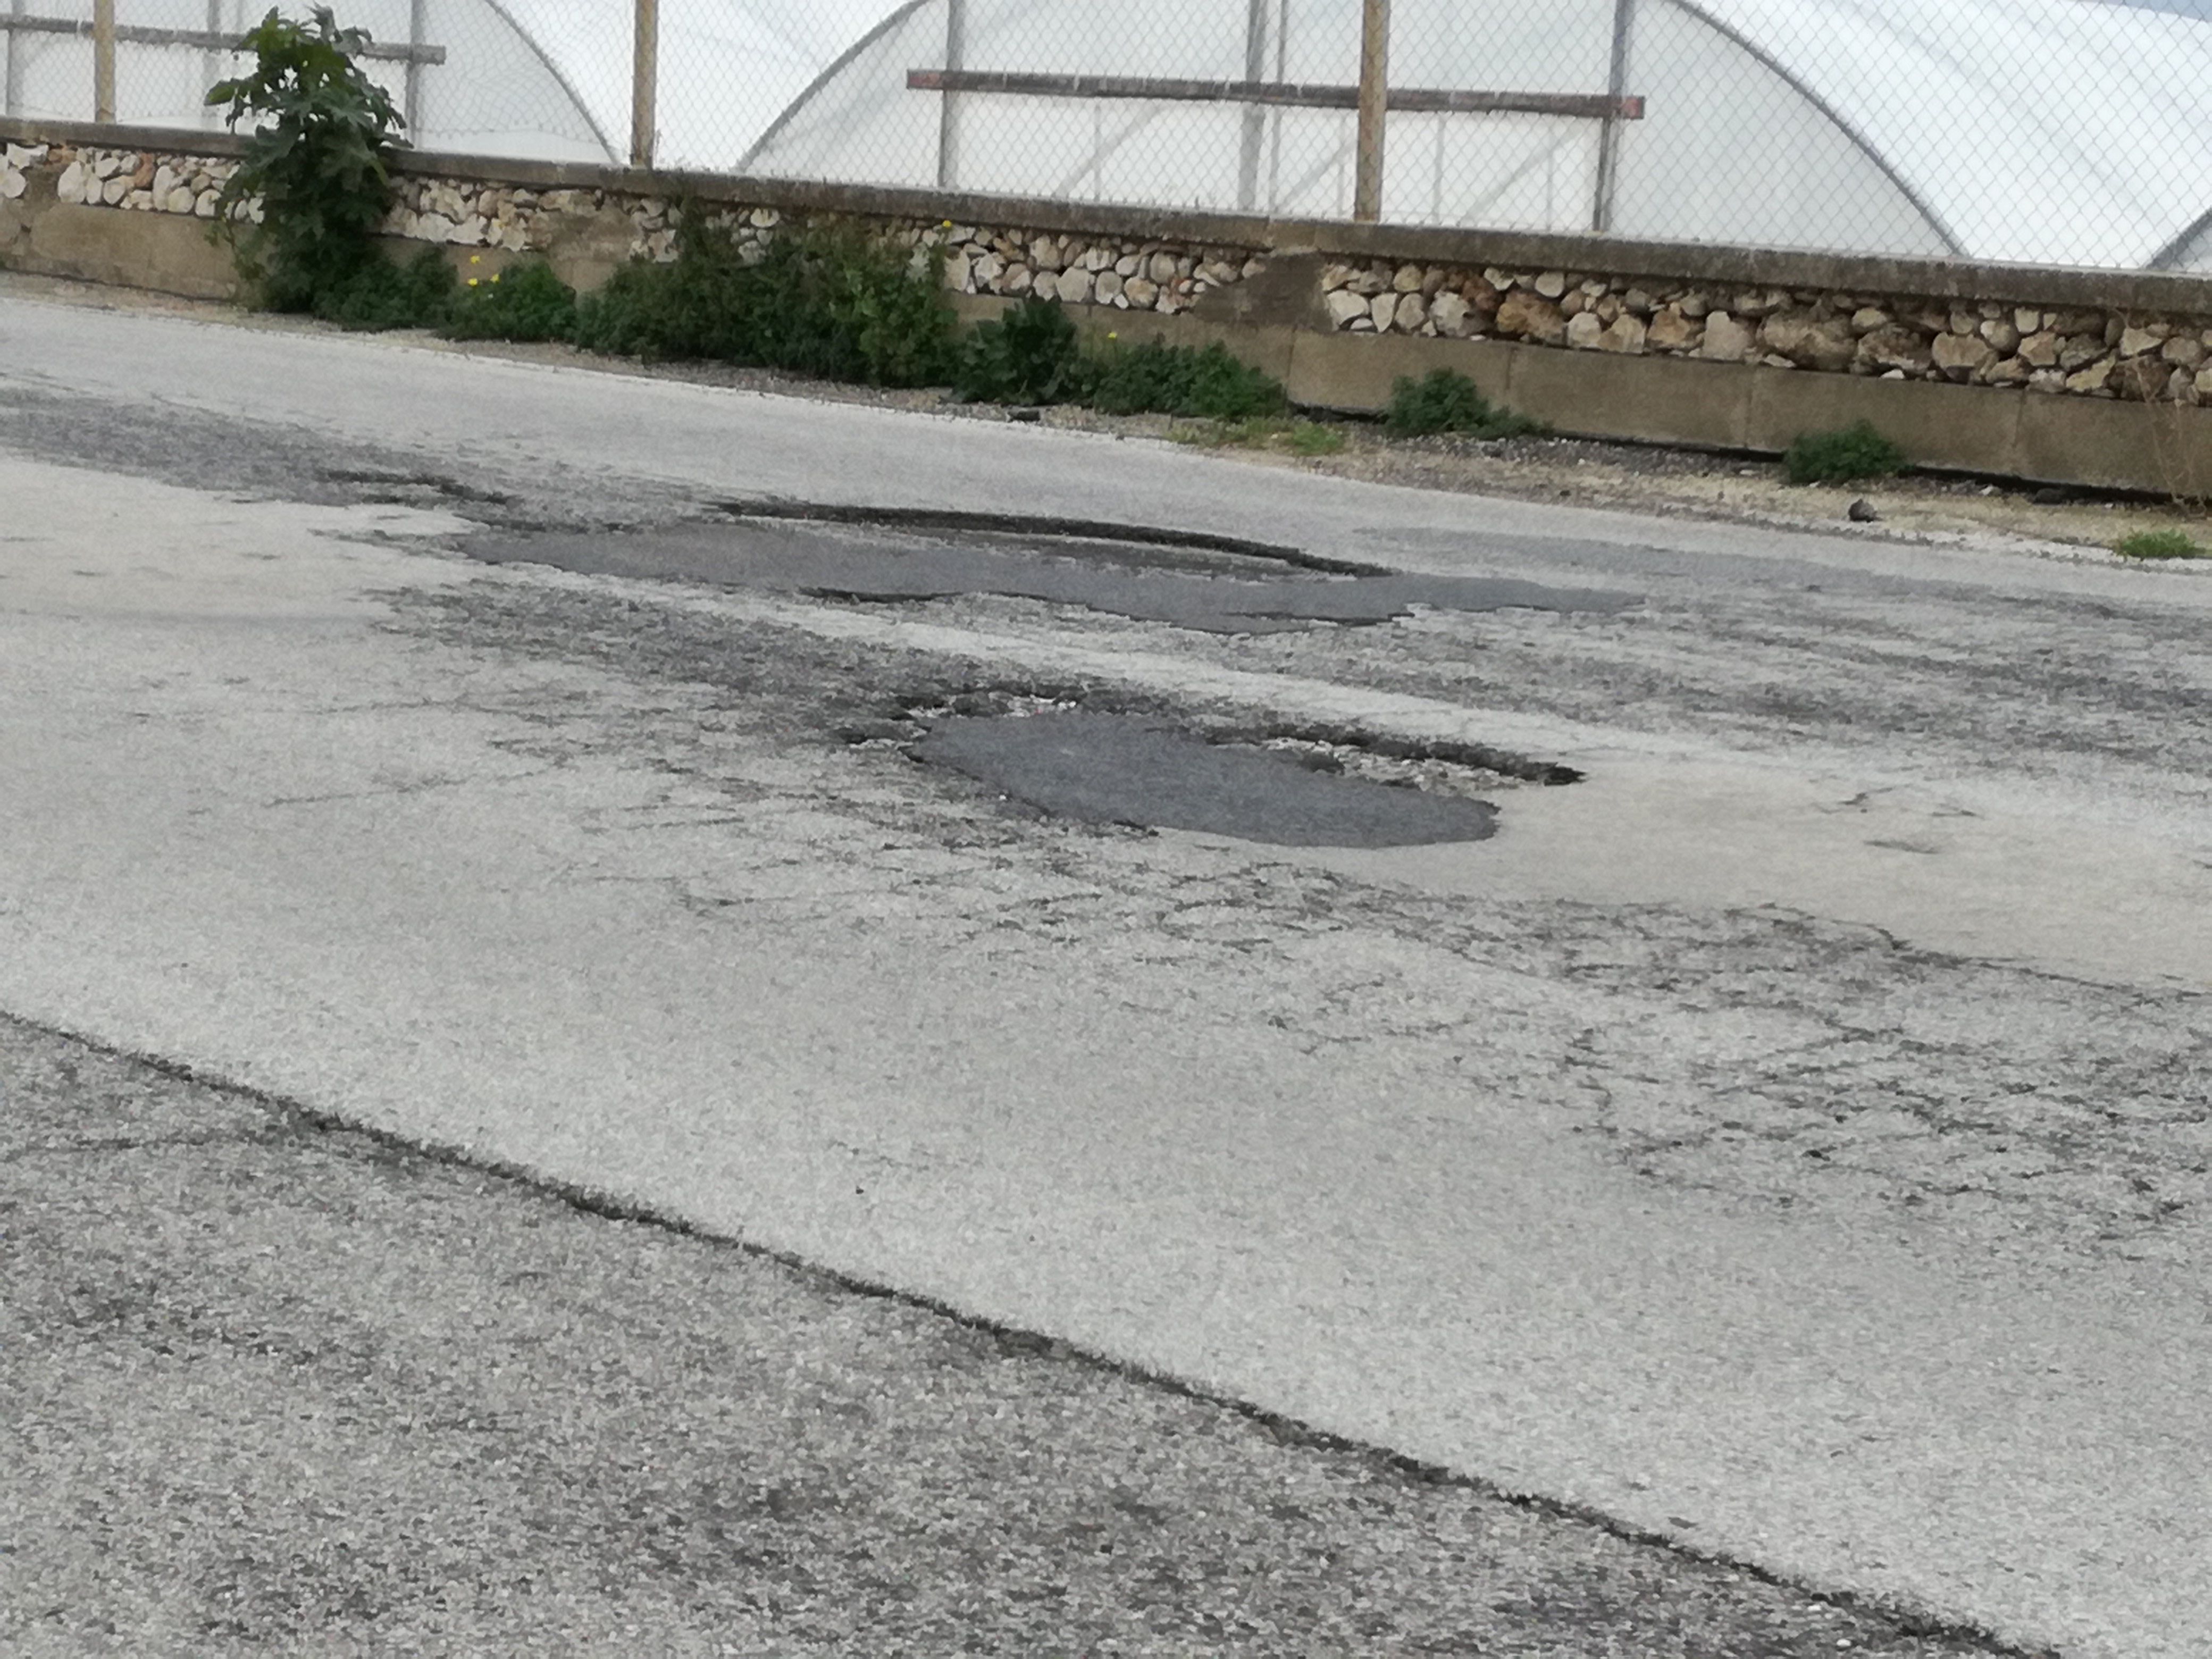  La Santa Croce-Punta Secca è piena di “crateri”: motociclisti a rischio